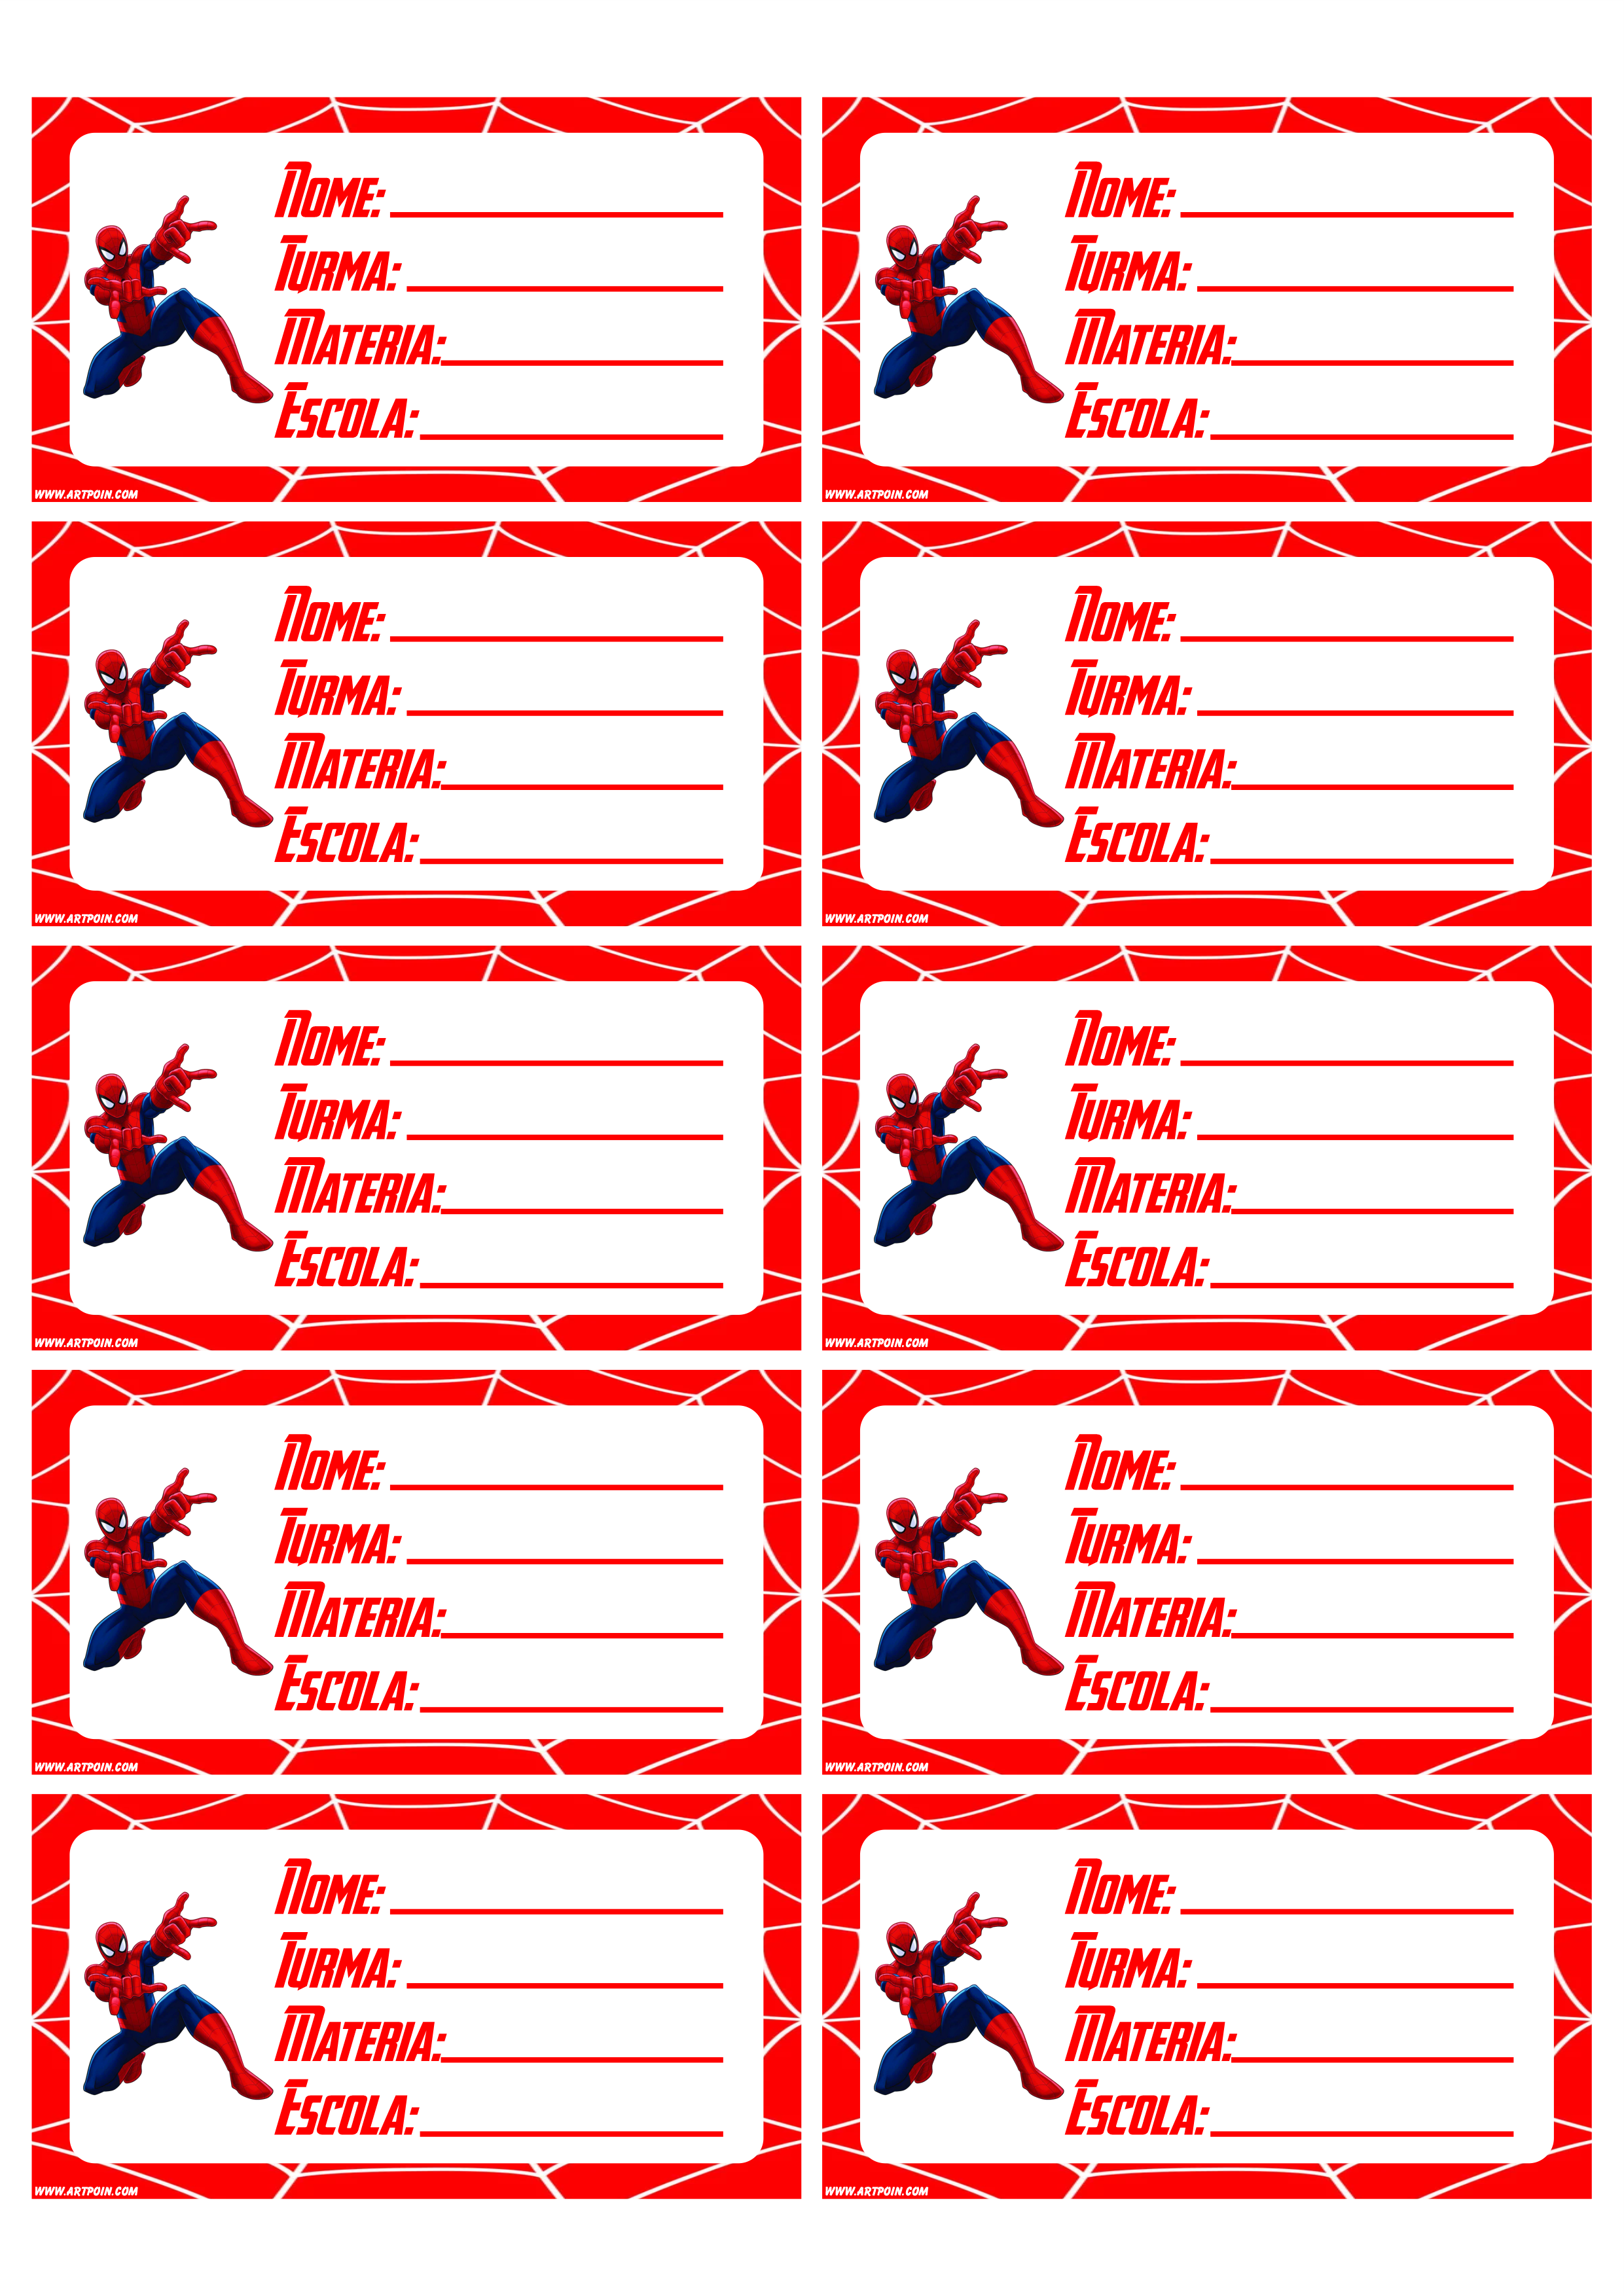 Etiquetas personalizadas para material escolar homem aranha 10 tags prontas para imprimir grátis png